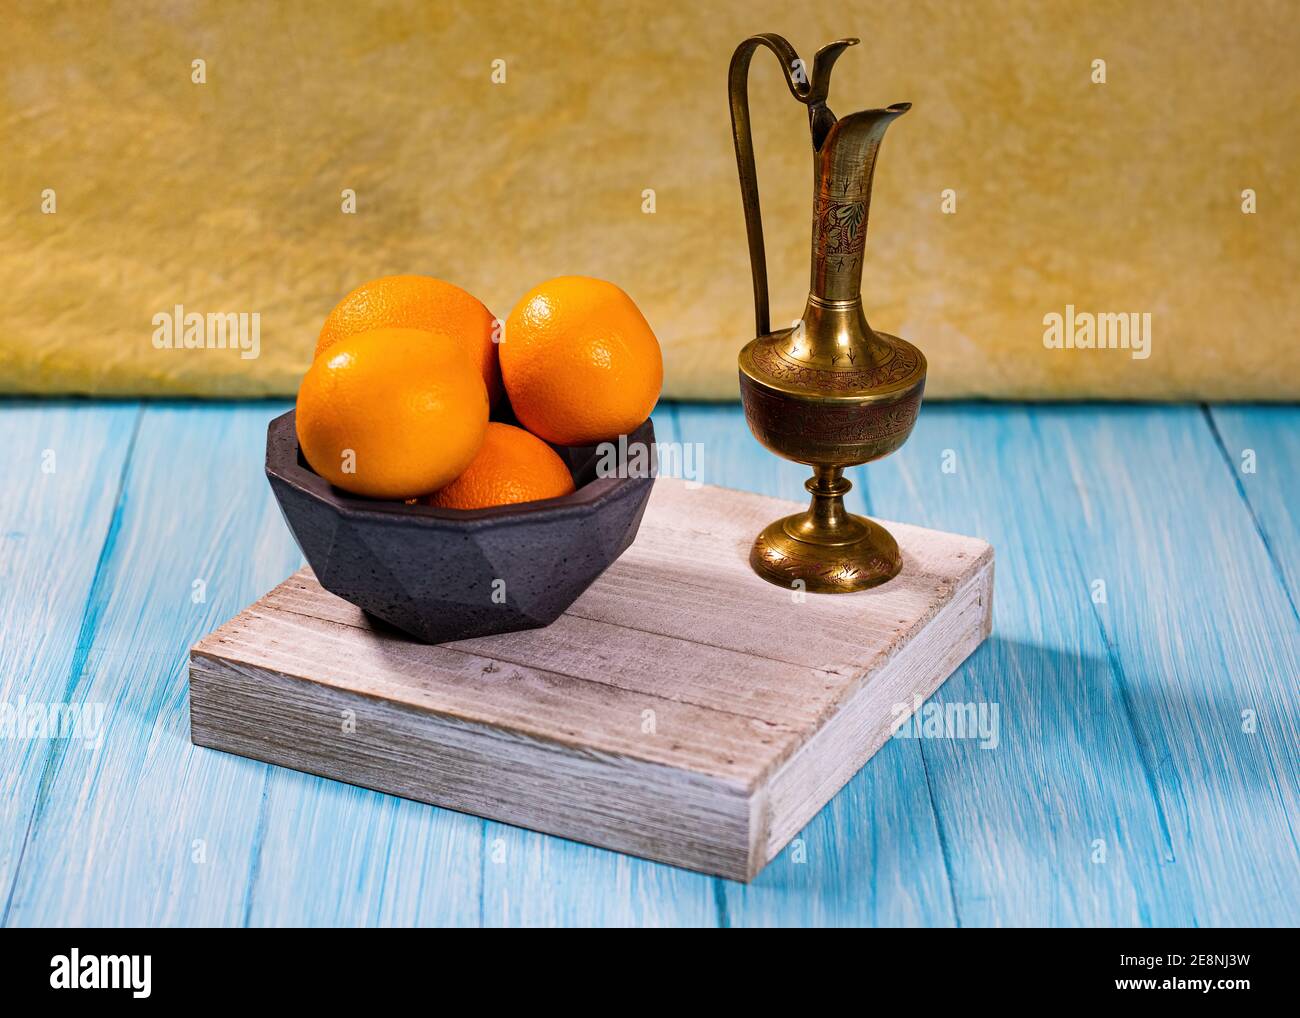 Eine Gruppe von Orangen in einer geodätischen Betonschale und eine geätzte Messingurne auf einer cyanfarbenen Basis mit hellgelb-oranger Kulisse. Stockfoto